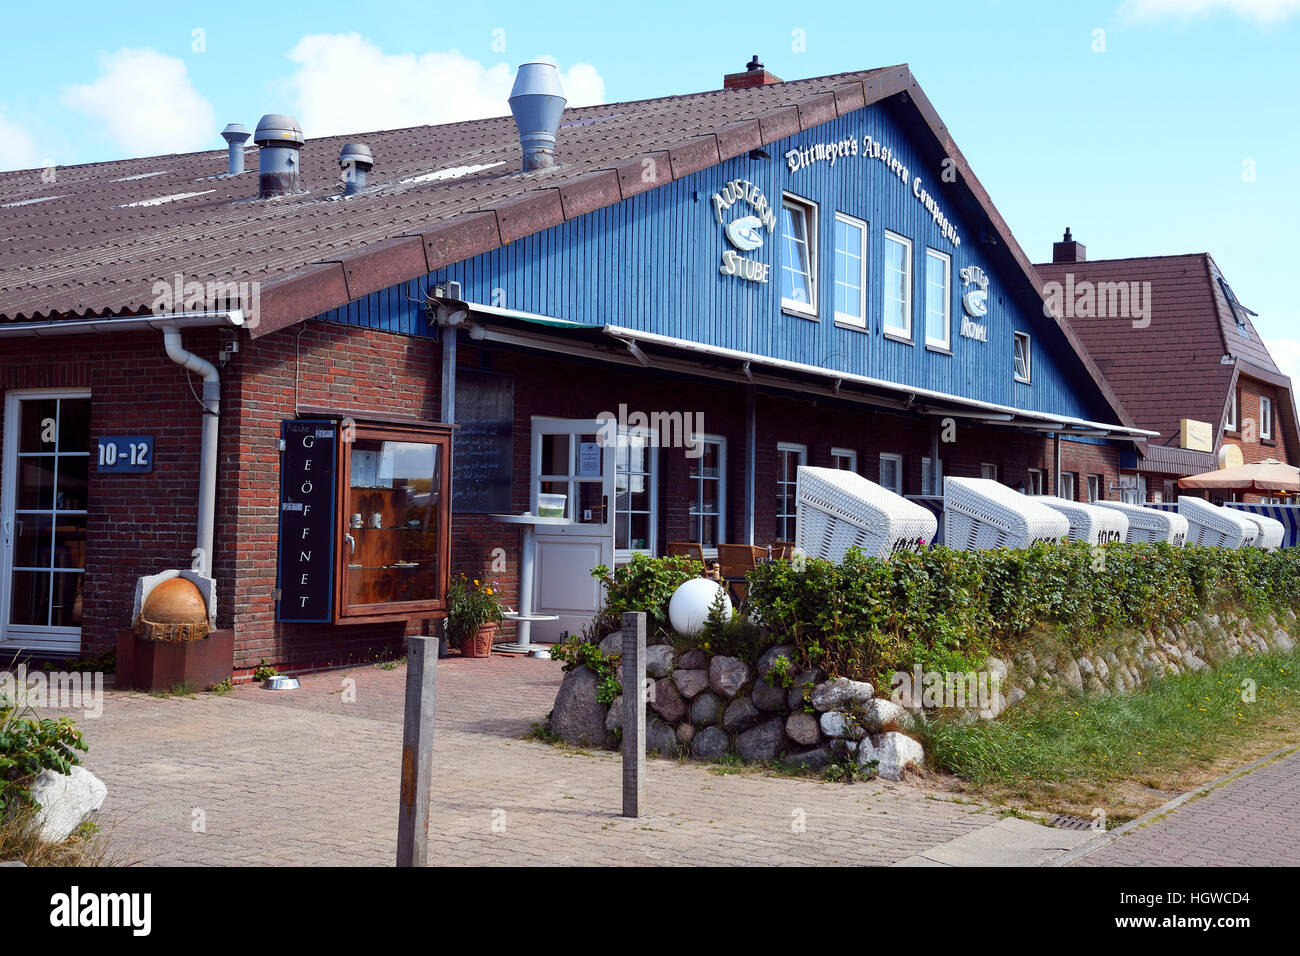 Kult-Restaurant Dittmeyer's Austern Compagnie, Sylt, nordfriesische Inseln, Nordfriesland, Schleswig-Holstein, Deutschland Stock Photo